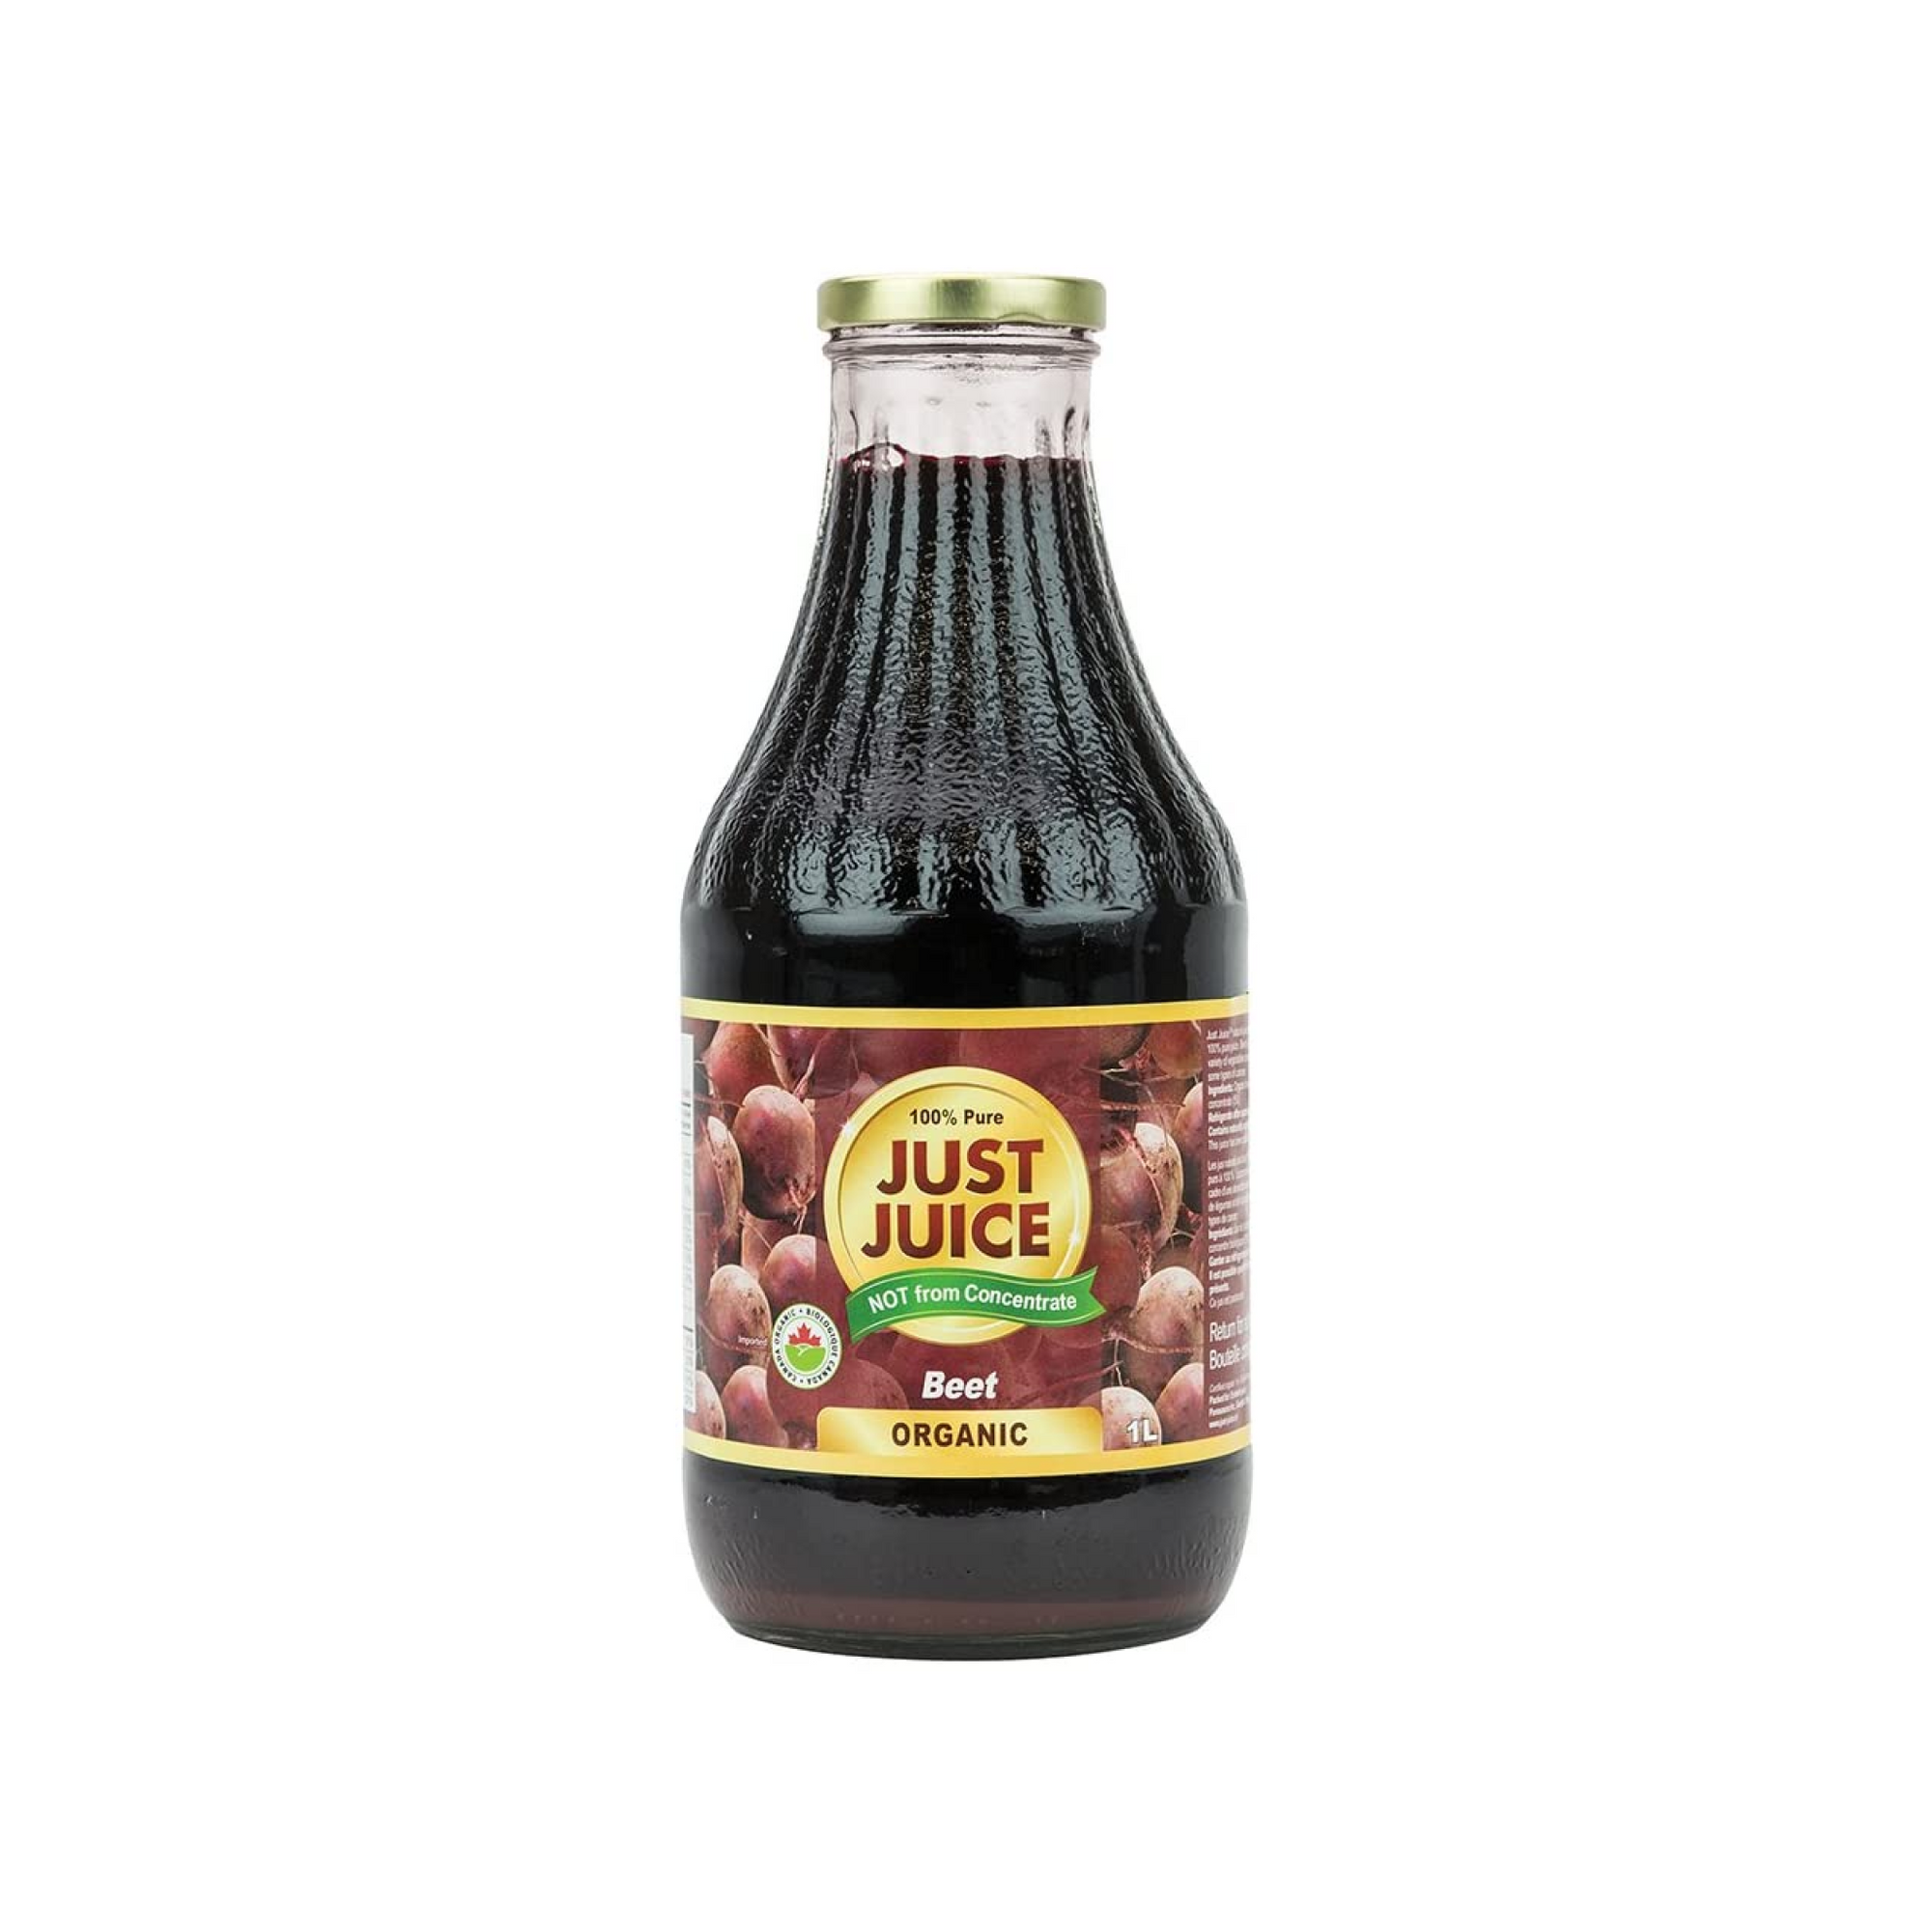 Just Juice 100% Pure Organic Beet Juice 1L